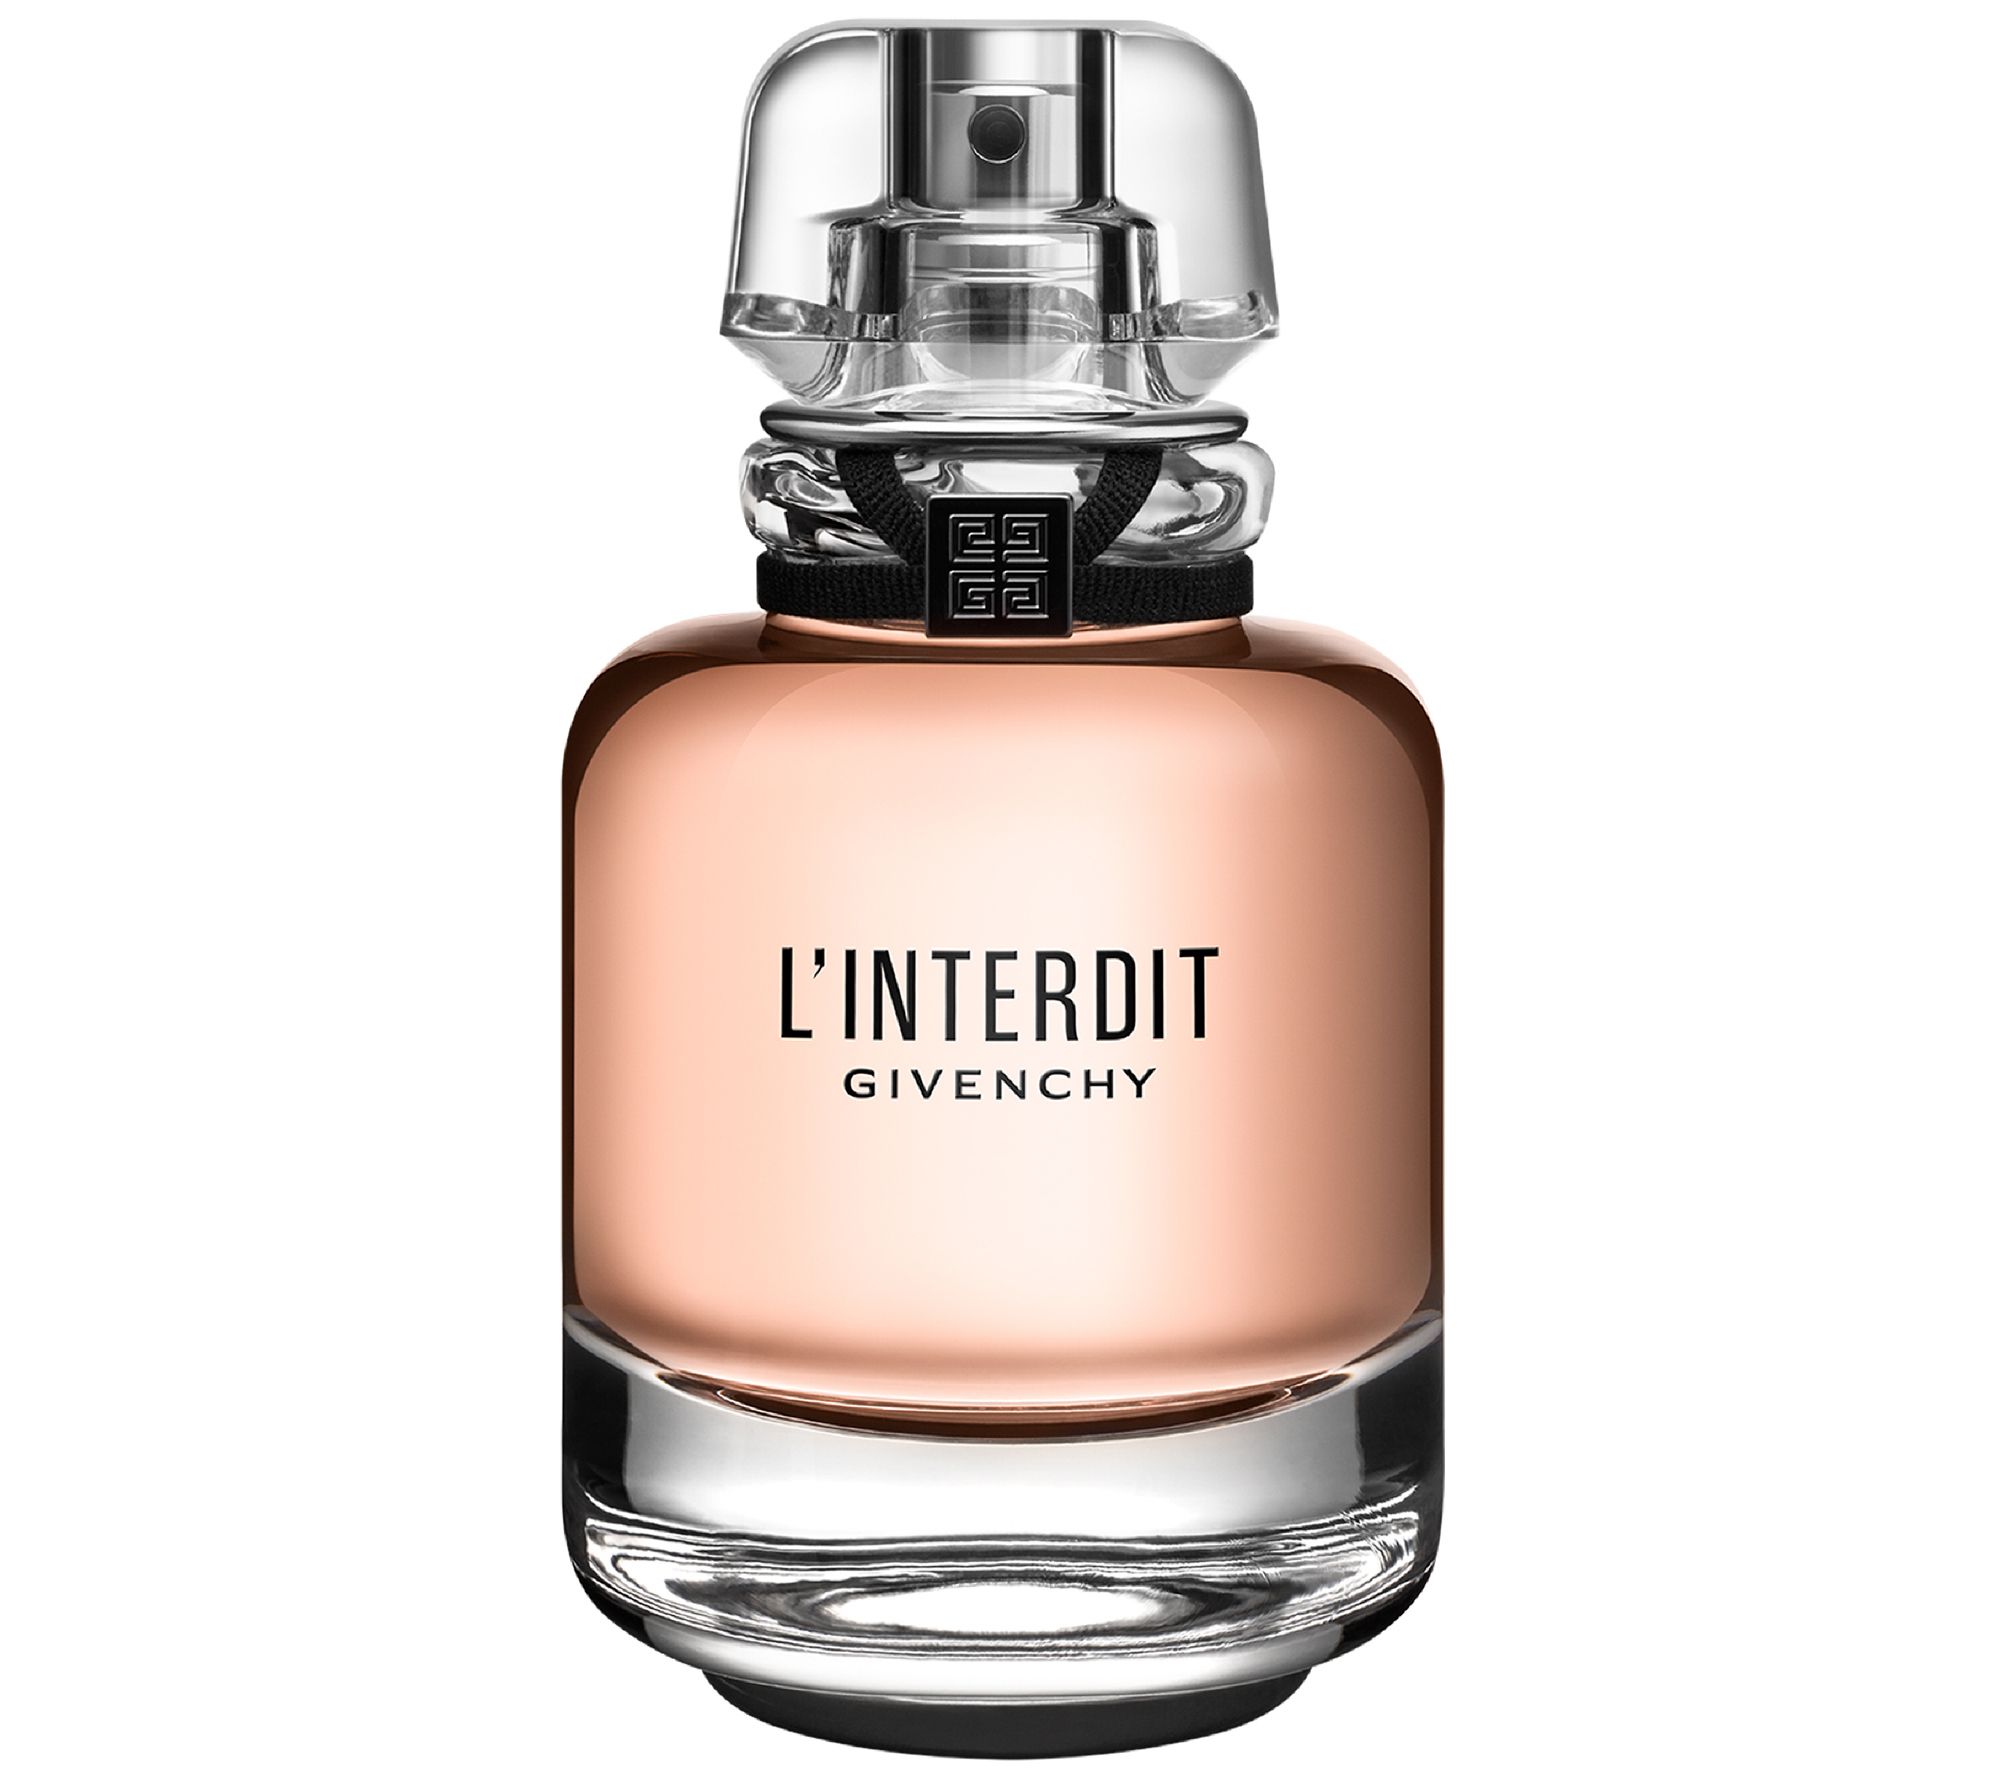 L'interdit Perfume by Givenchy 2.7 oz. Eau de Parfum Spray New in  Sealed Box